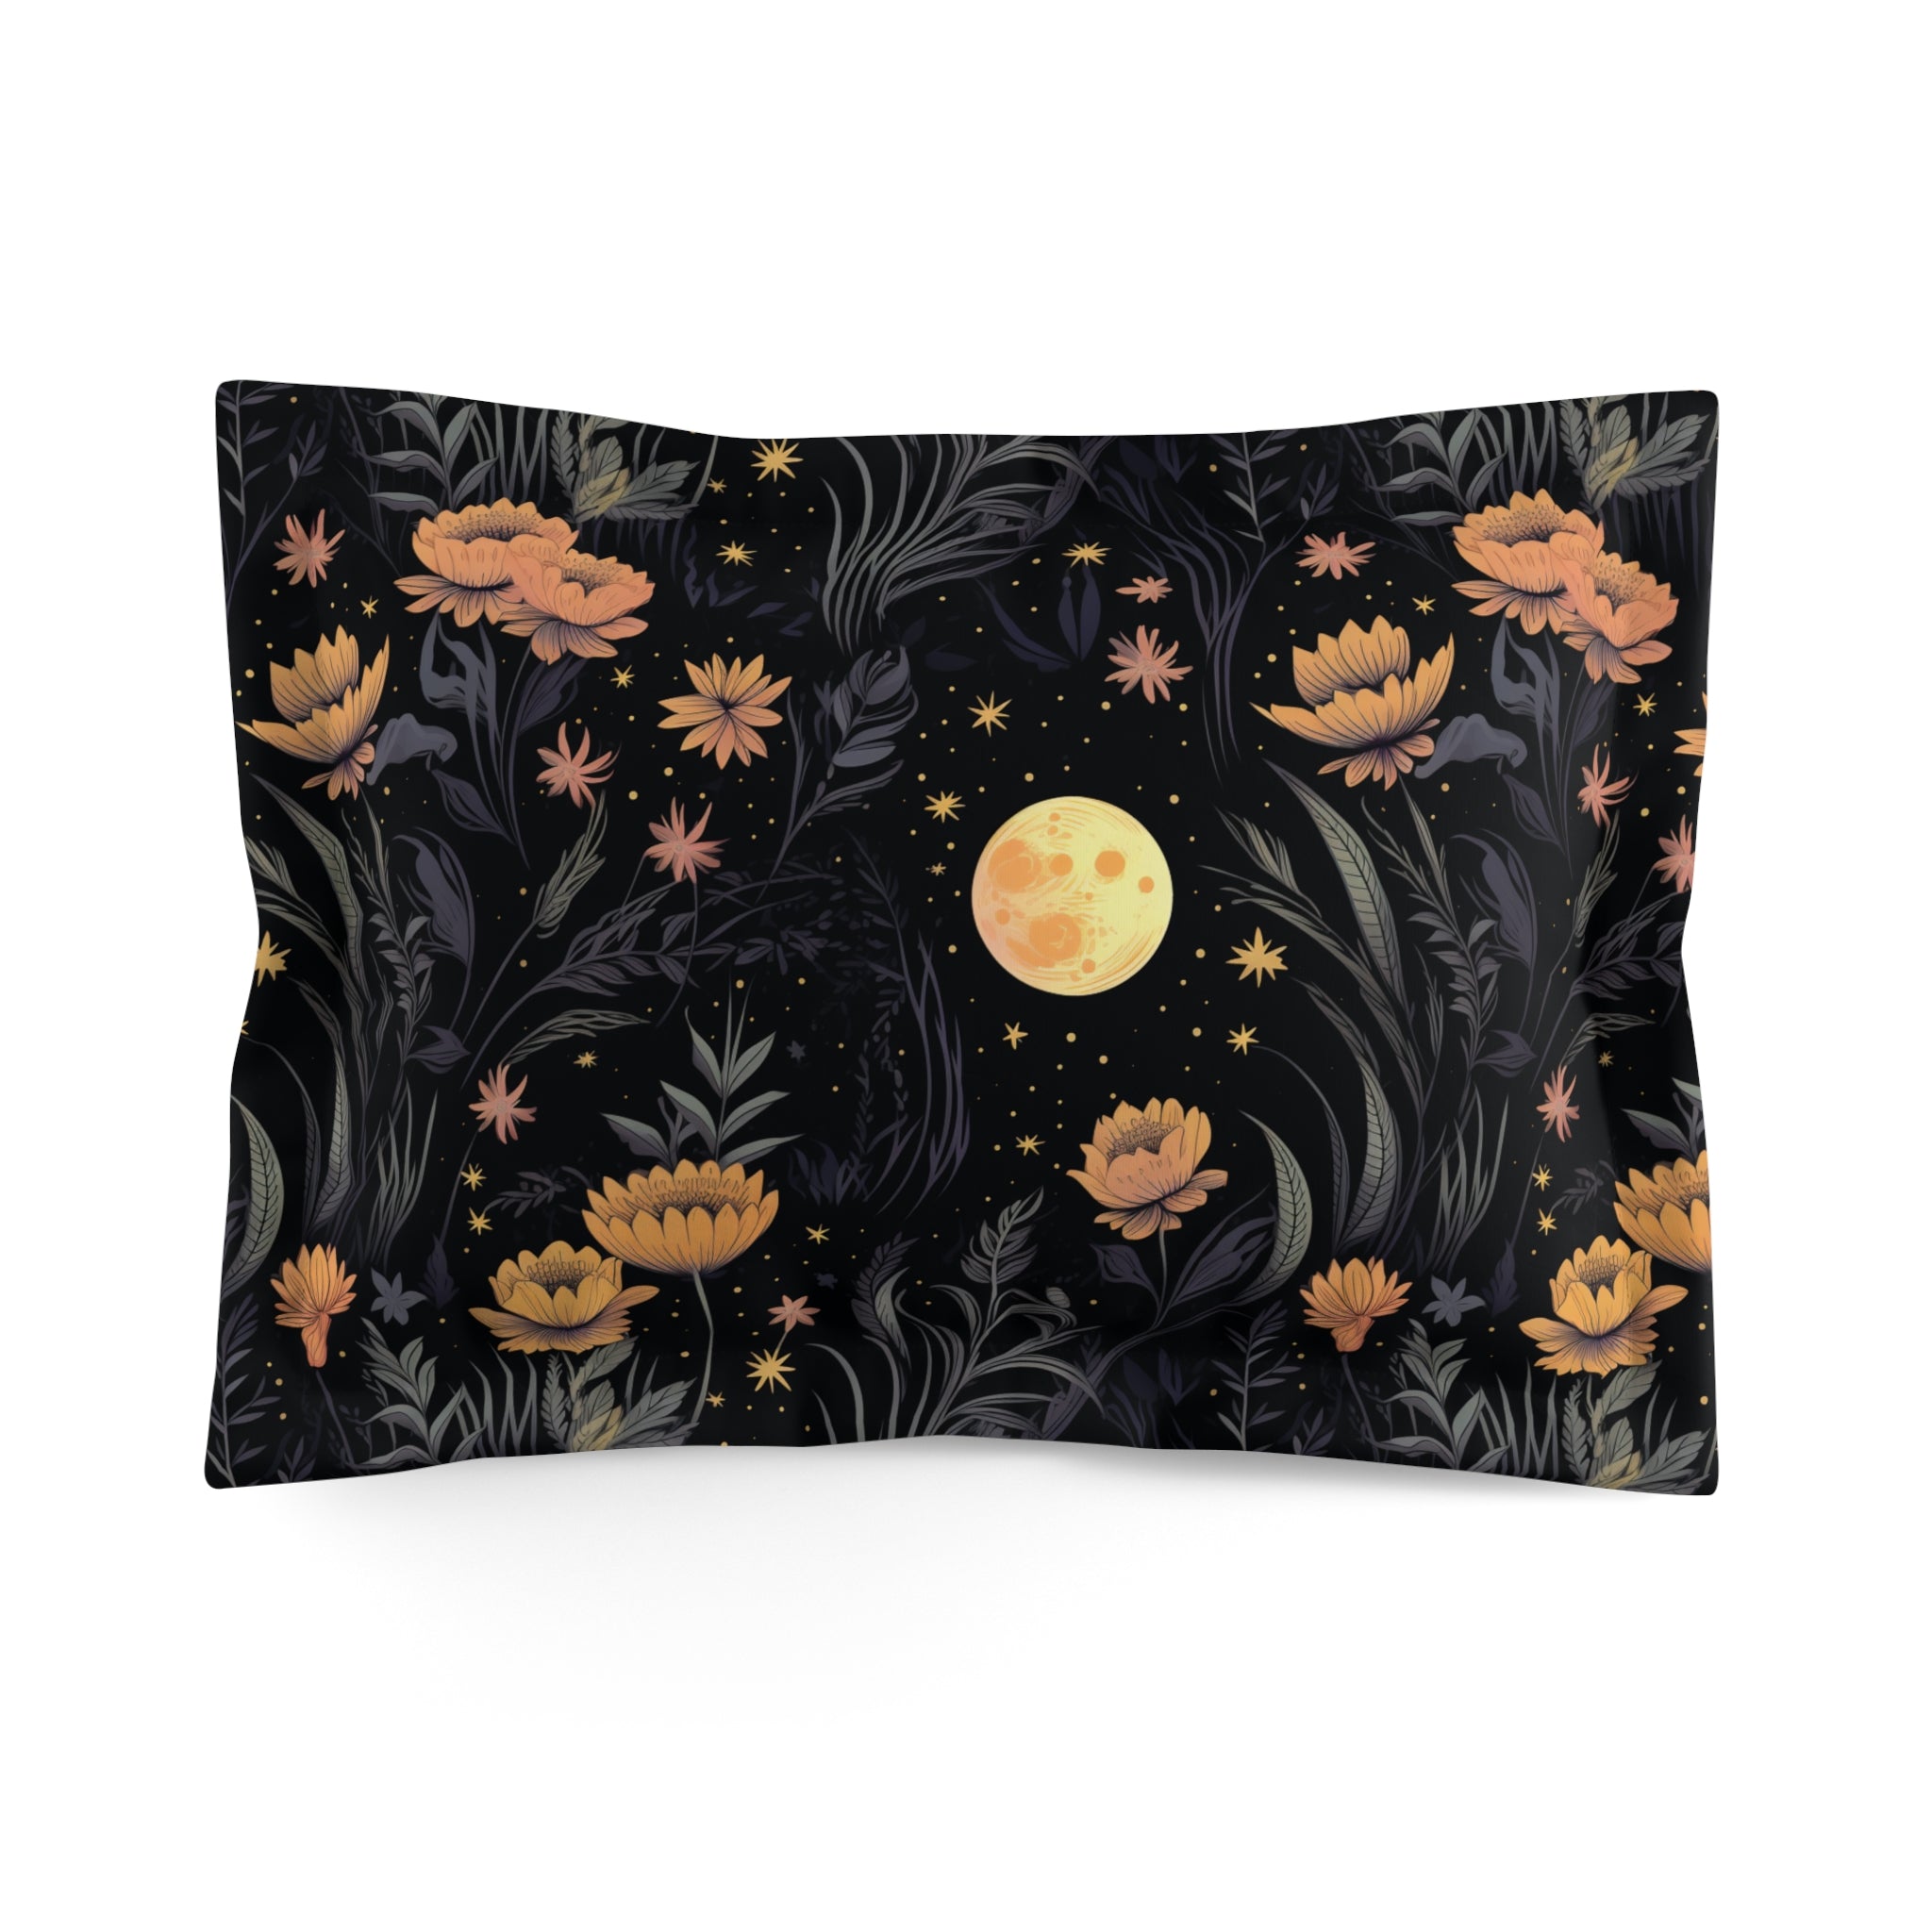 Garden of Shadows Floral Duvet Cover Set with Pillow Shams, Microfiber